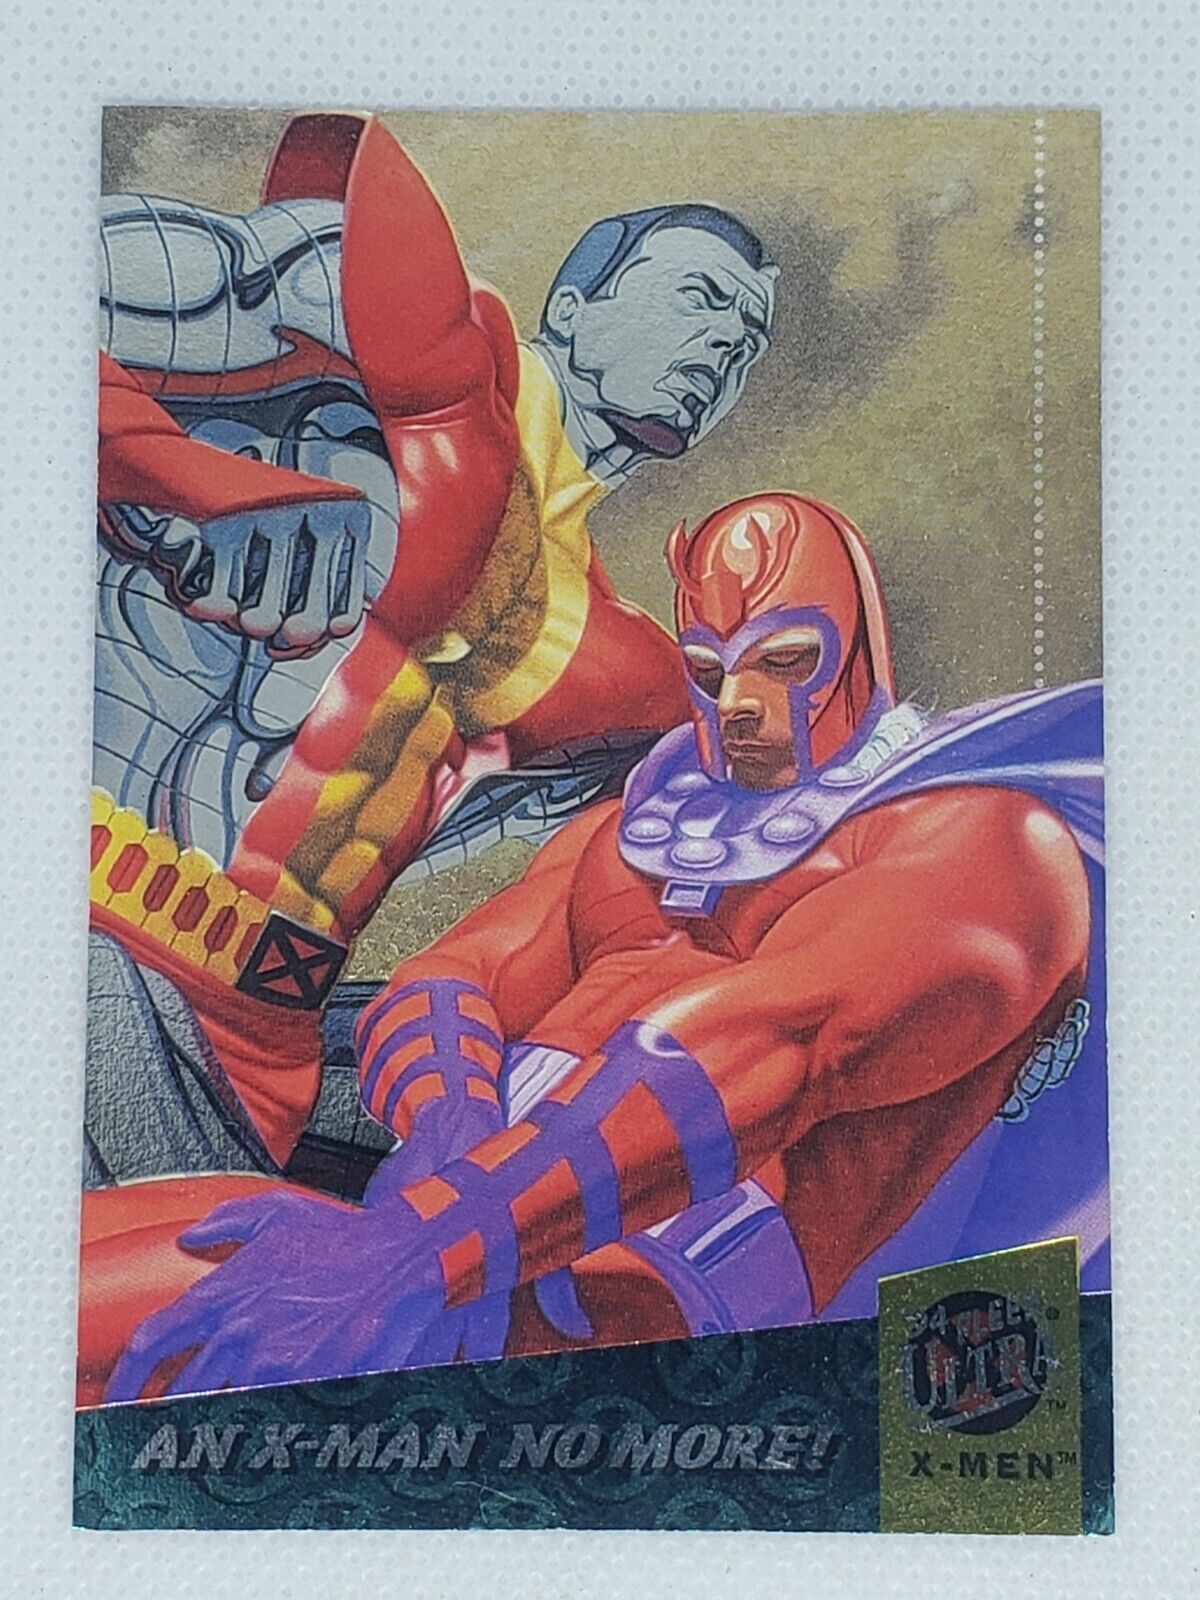 1994 Marvel Fleer Ultra X-Men Limited Edition Subset Foil Cards - You Pick